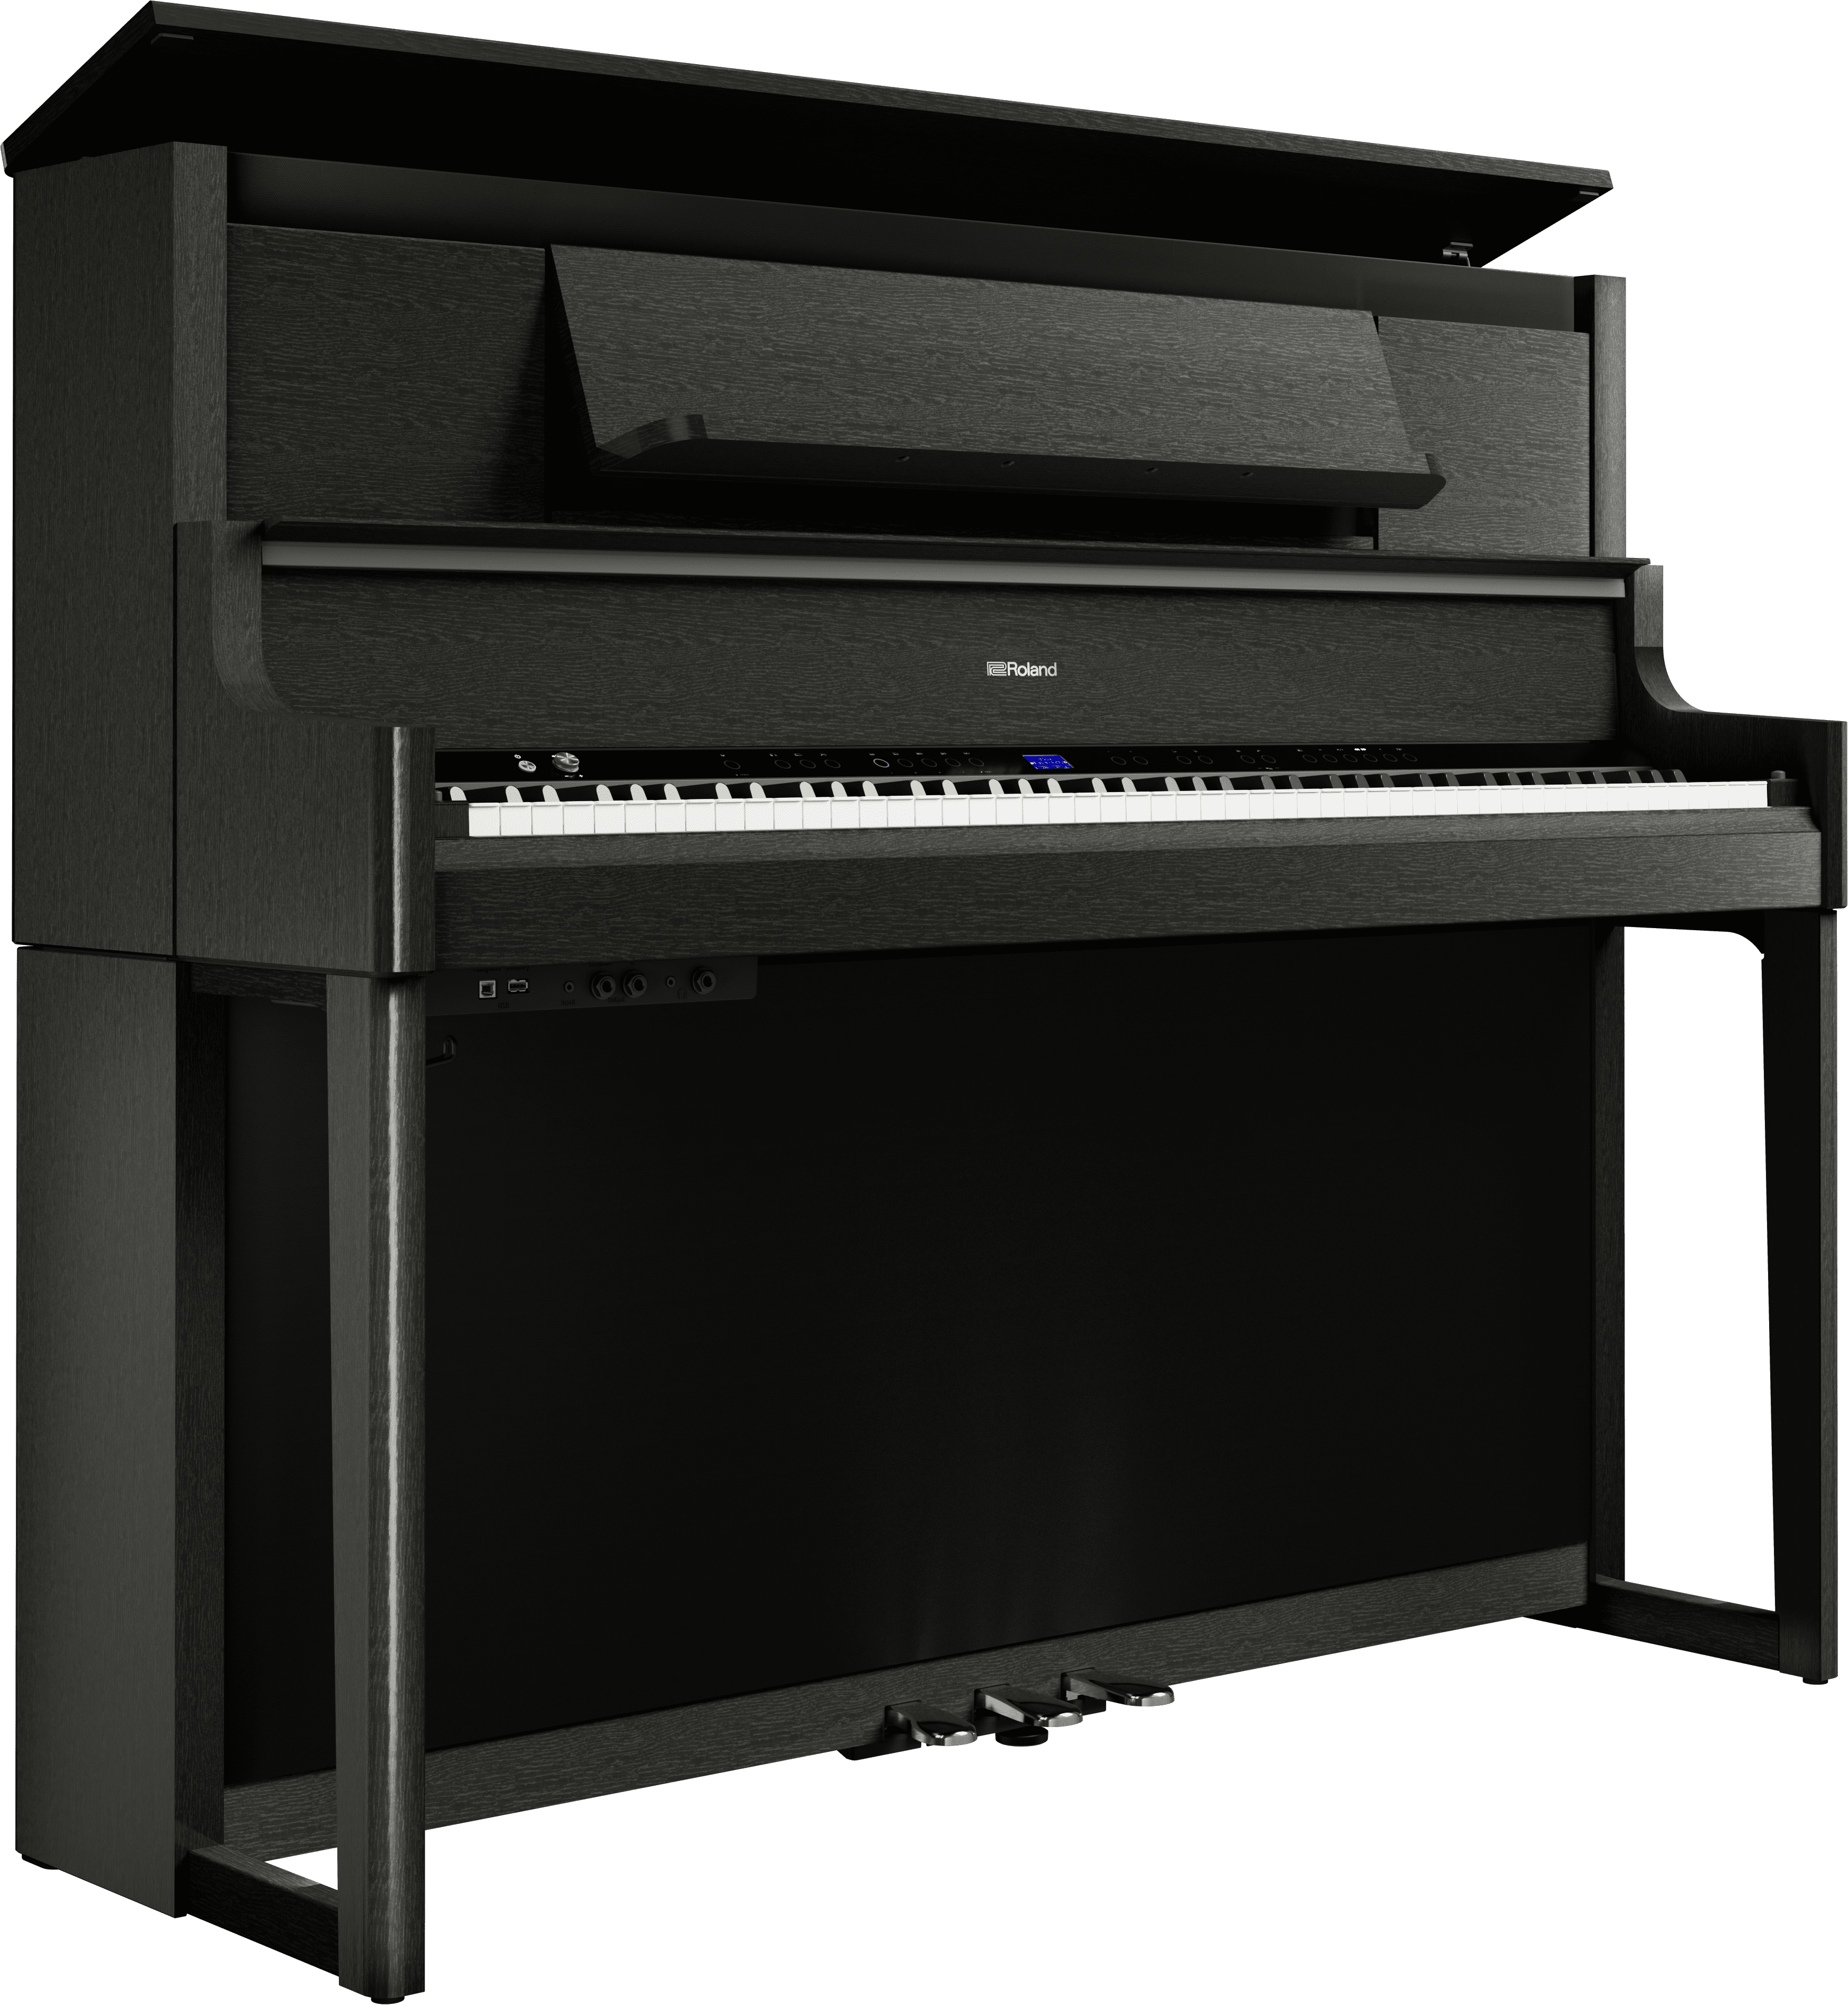 Roland進化を遂げた最高クラス鍵盤と、この上ない優雅なピアノ音を奏でるシリーズ最高峰モデル「LX9GP」